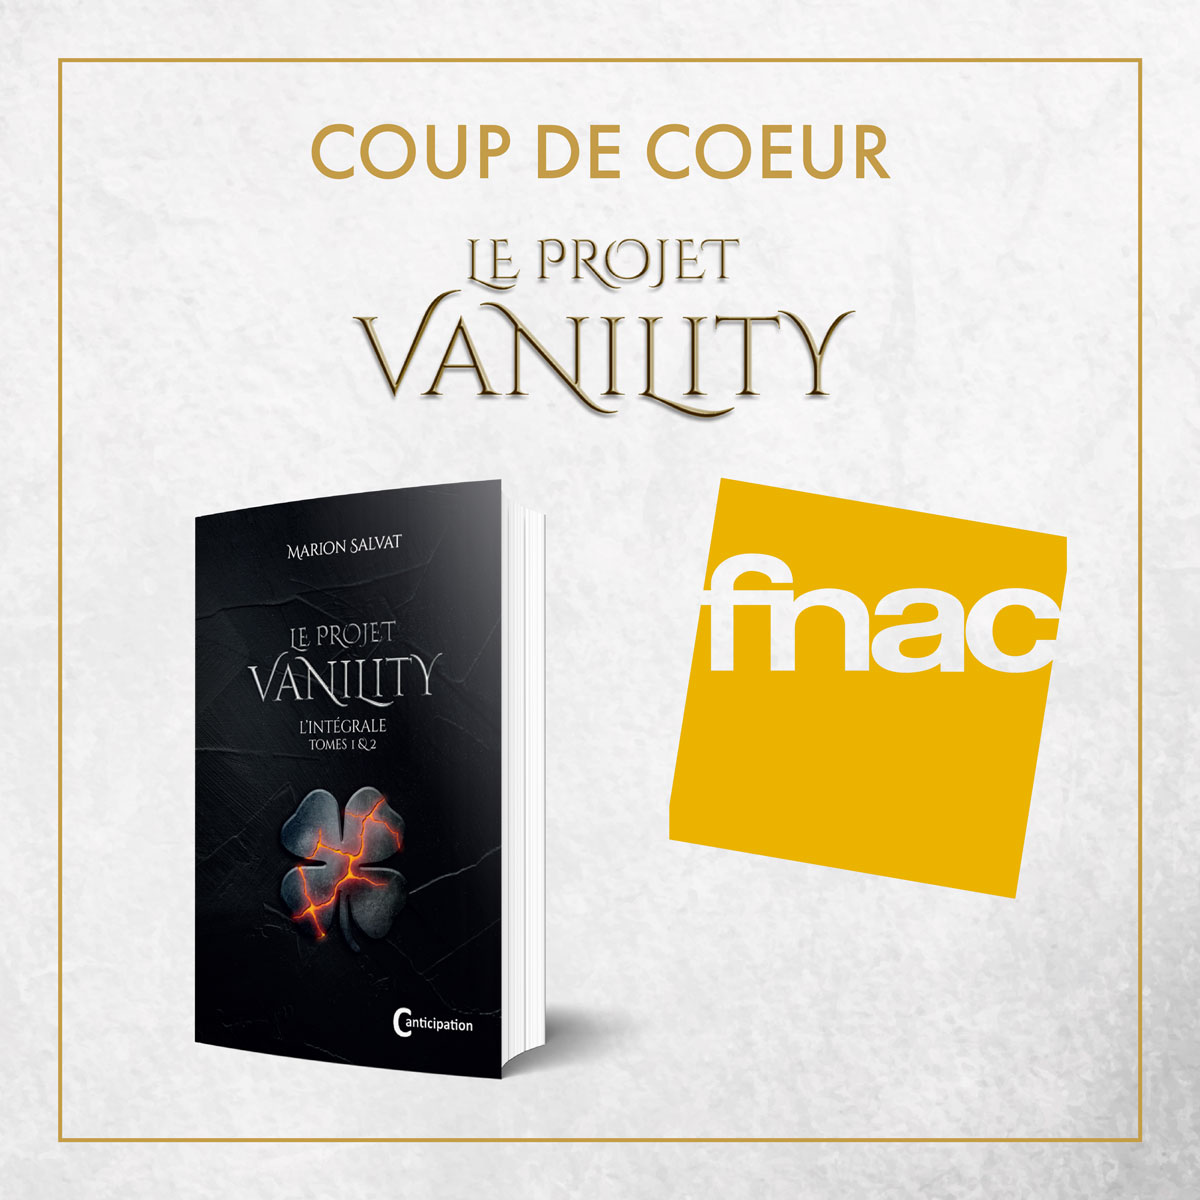 FNAC - Marion Salvat - Autrice de la quadrilogie Le Projet vanility - Young adult - Romans dystopiques - Anticipation